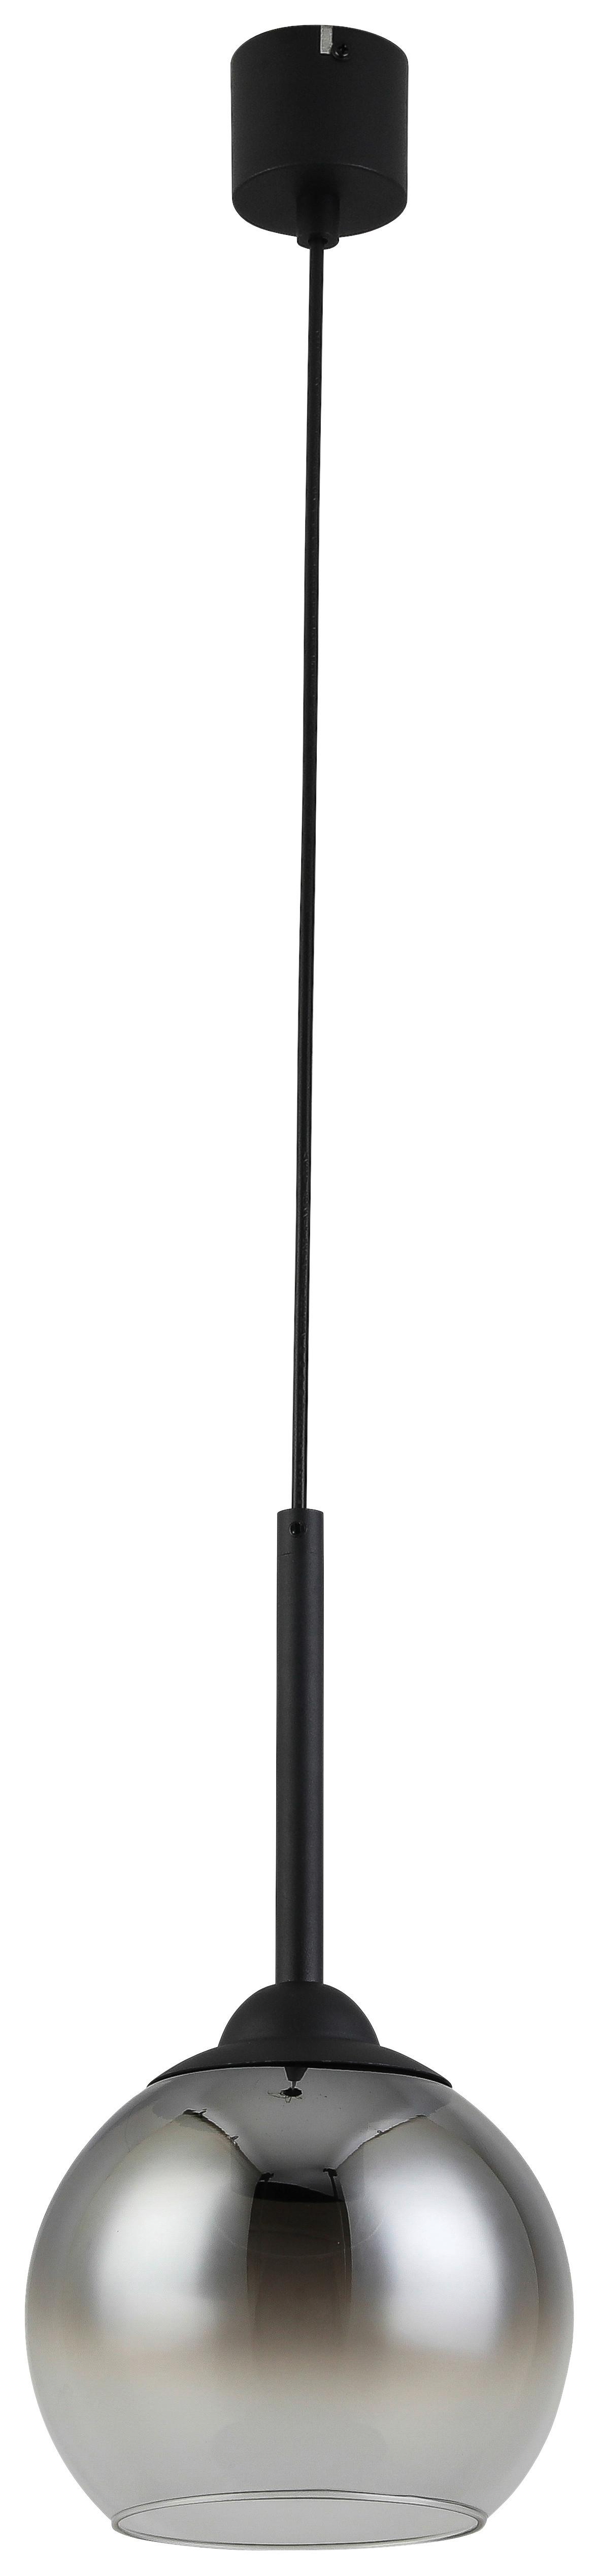 Závěsné Svítidlo Kian, Bez 1x E27 Max. 25w - černá, kov/plast (18/120cm) - Visiona